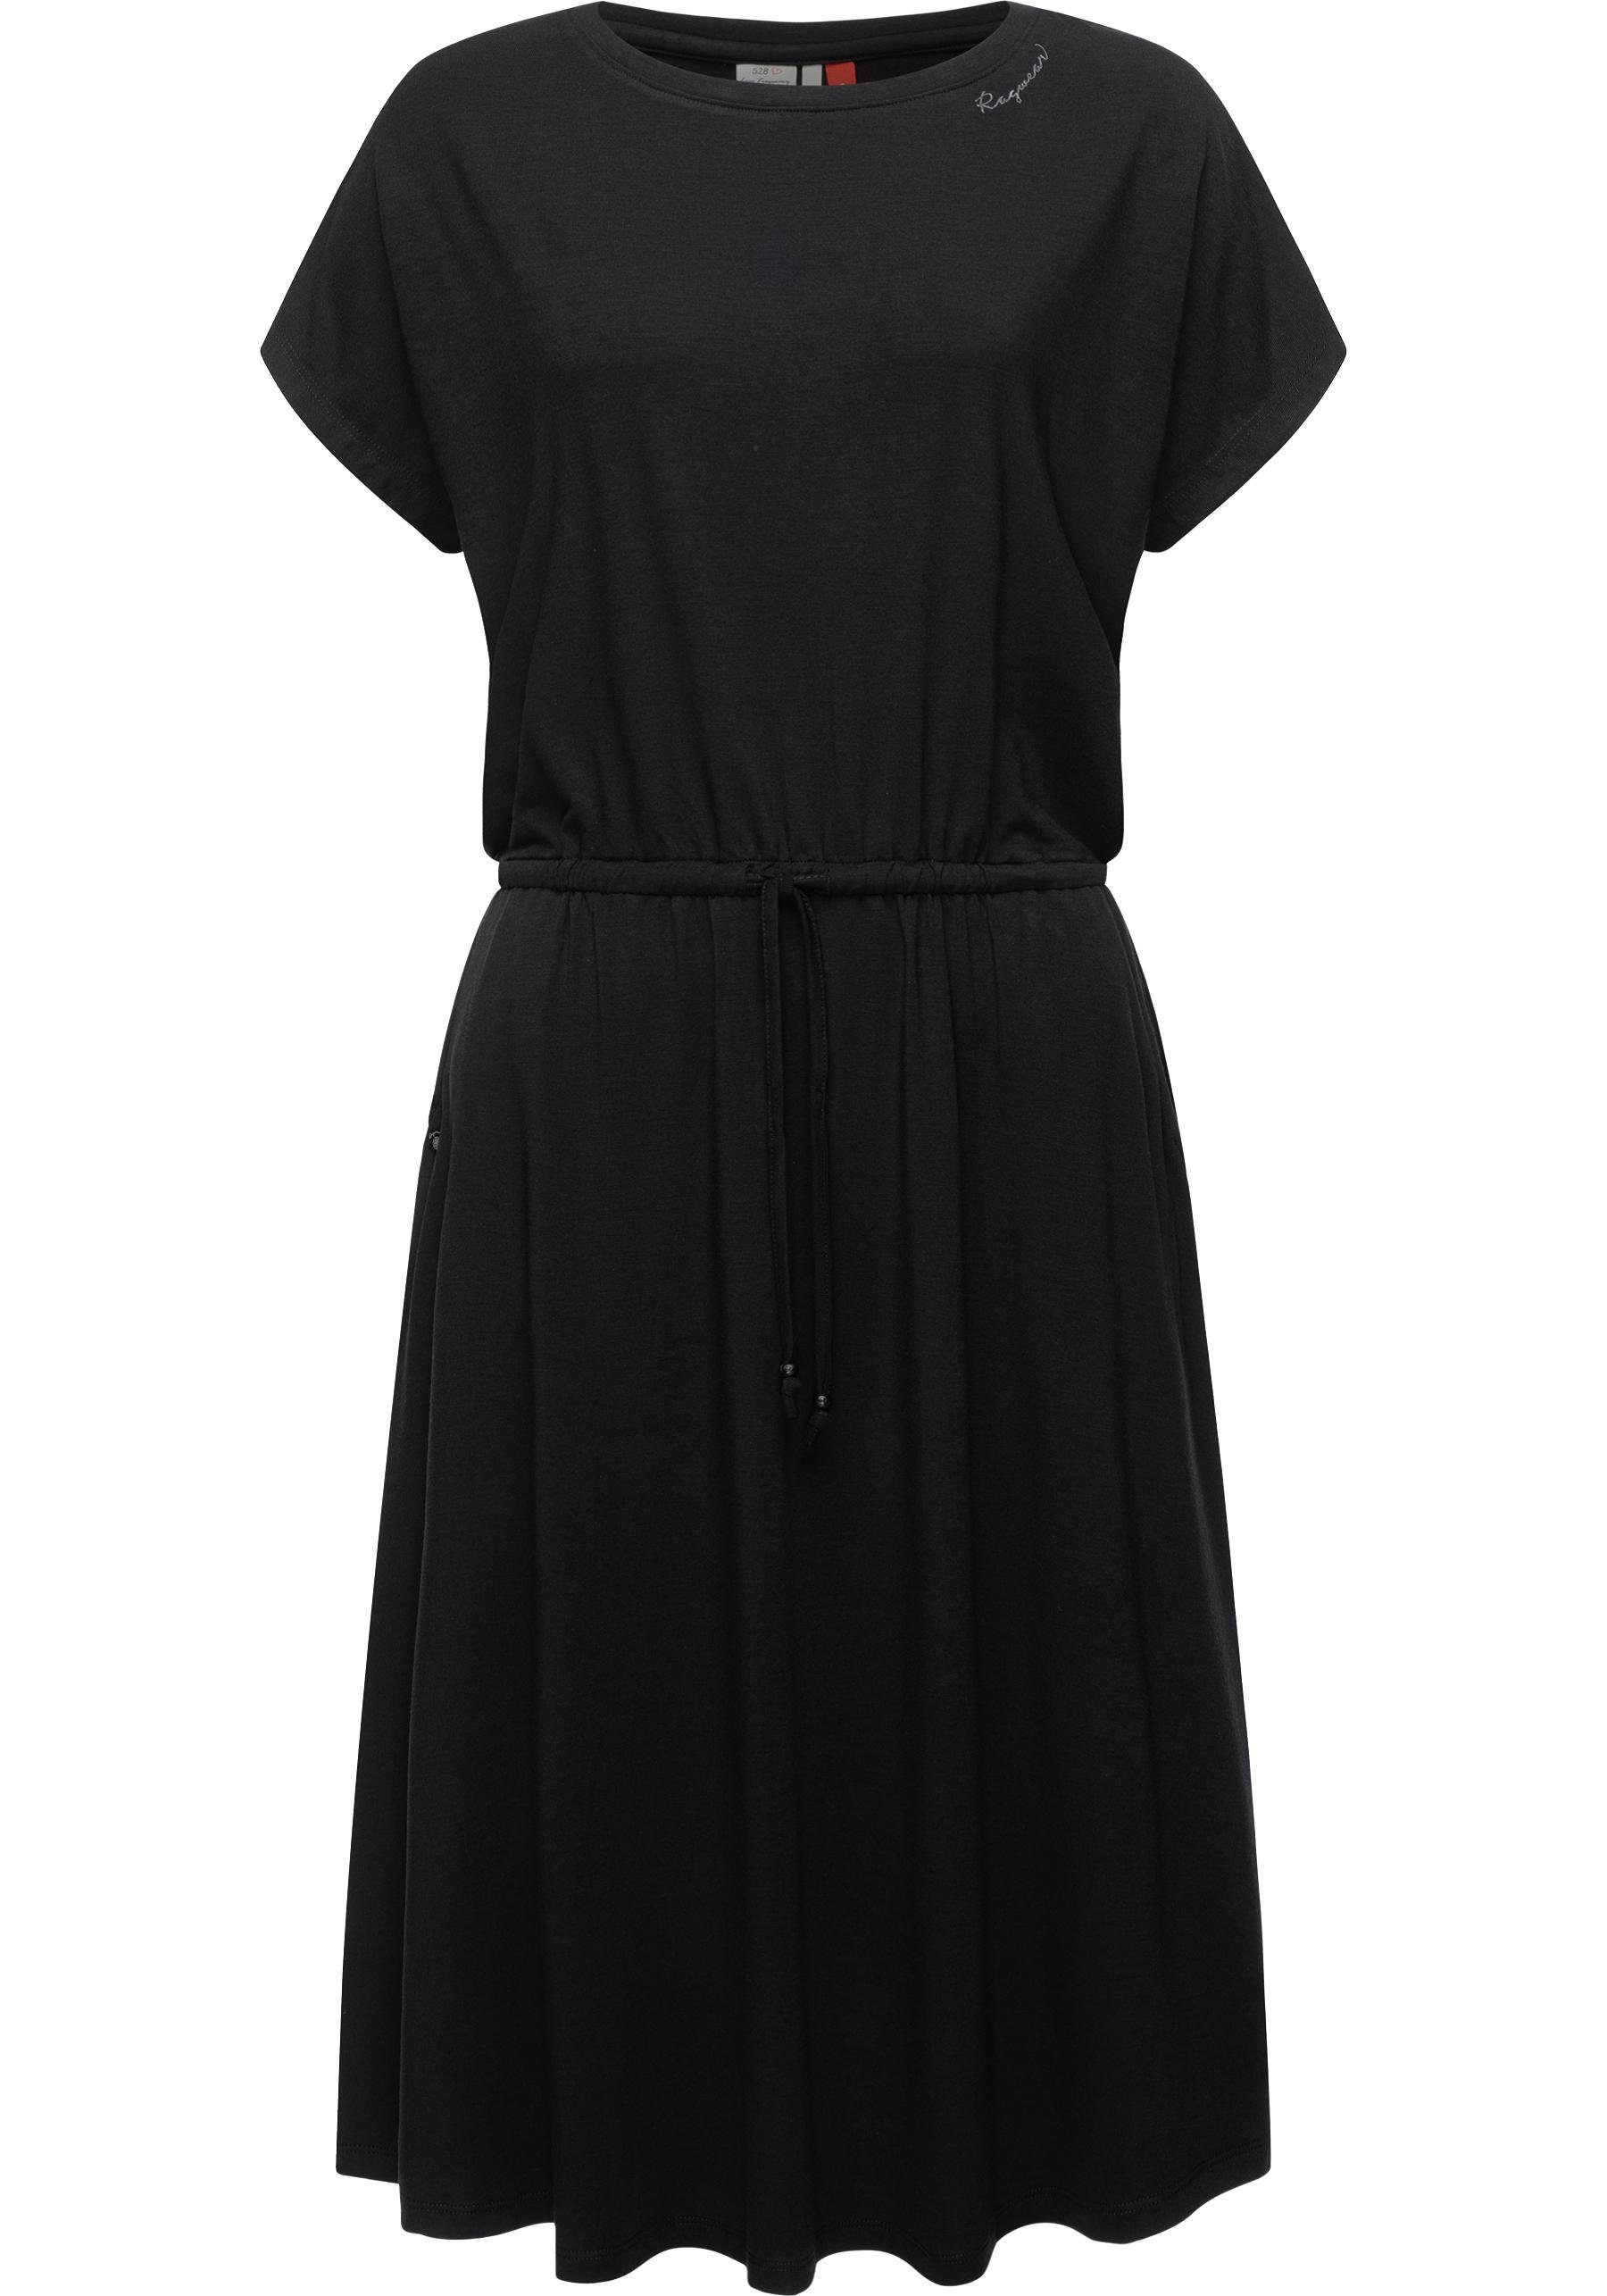 Ragwear Blusenkleid Pecori Dress stylisches, knielanges Sommerkleid mit verspielten Details